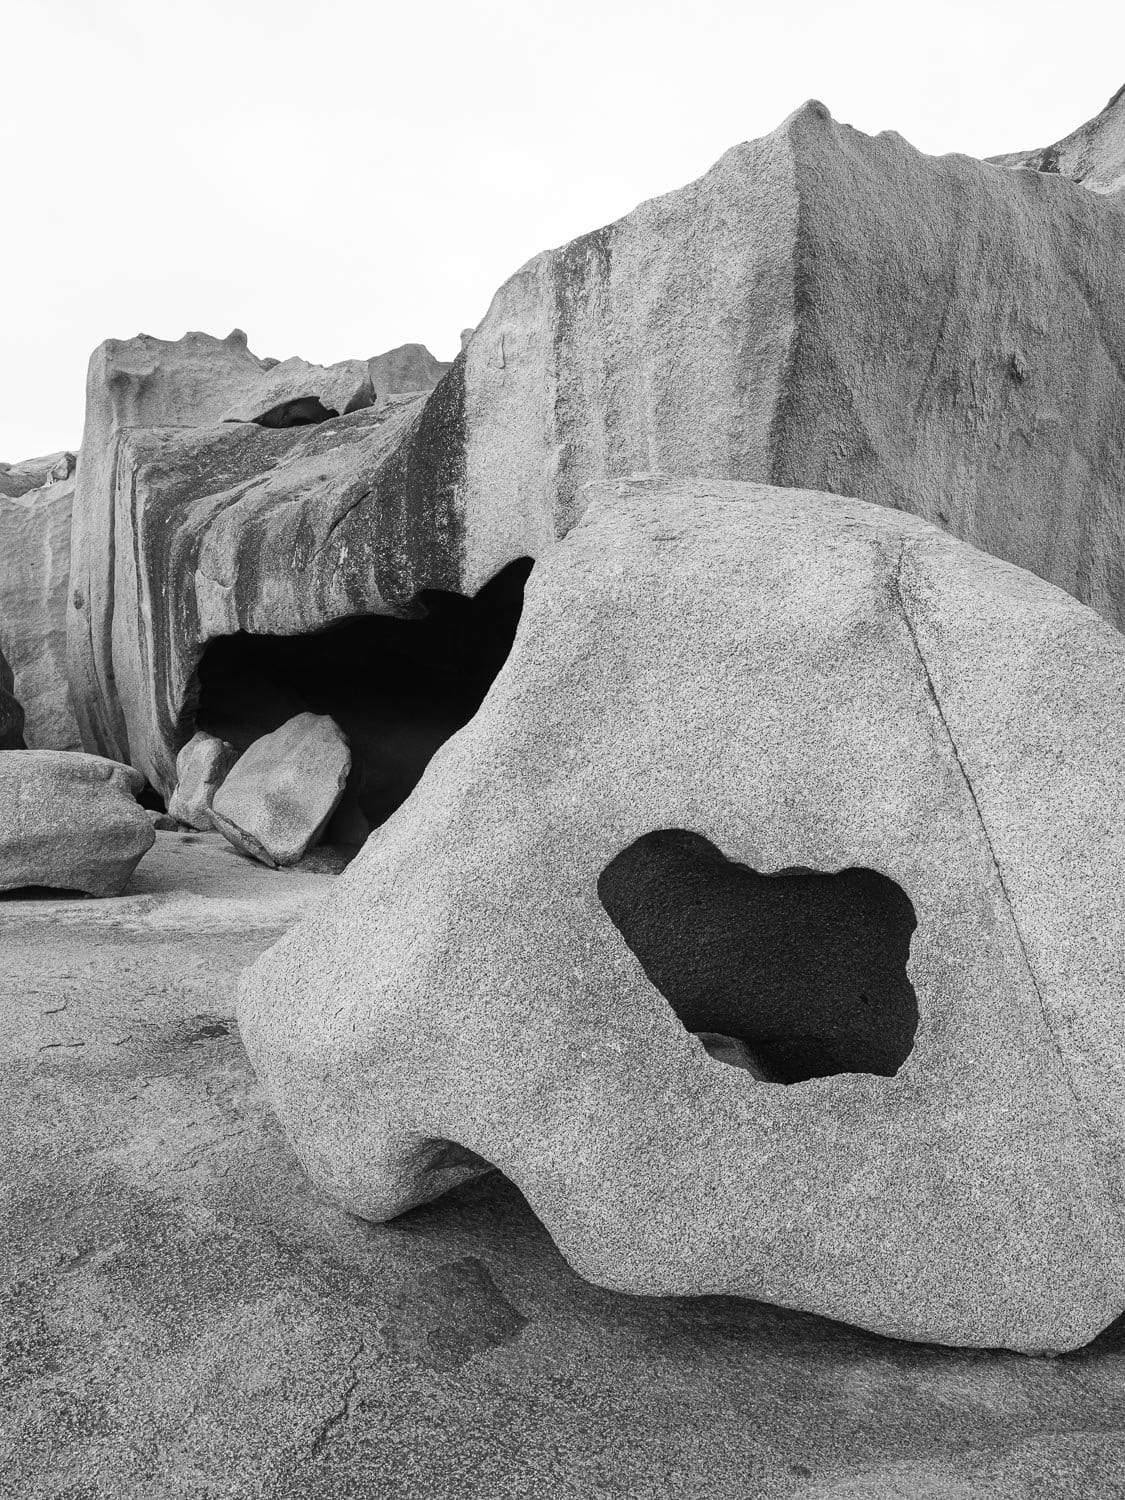 Standing stones, and rocky bolders, Remarkable Rocks #3 - Kangaroo Island SA